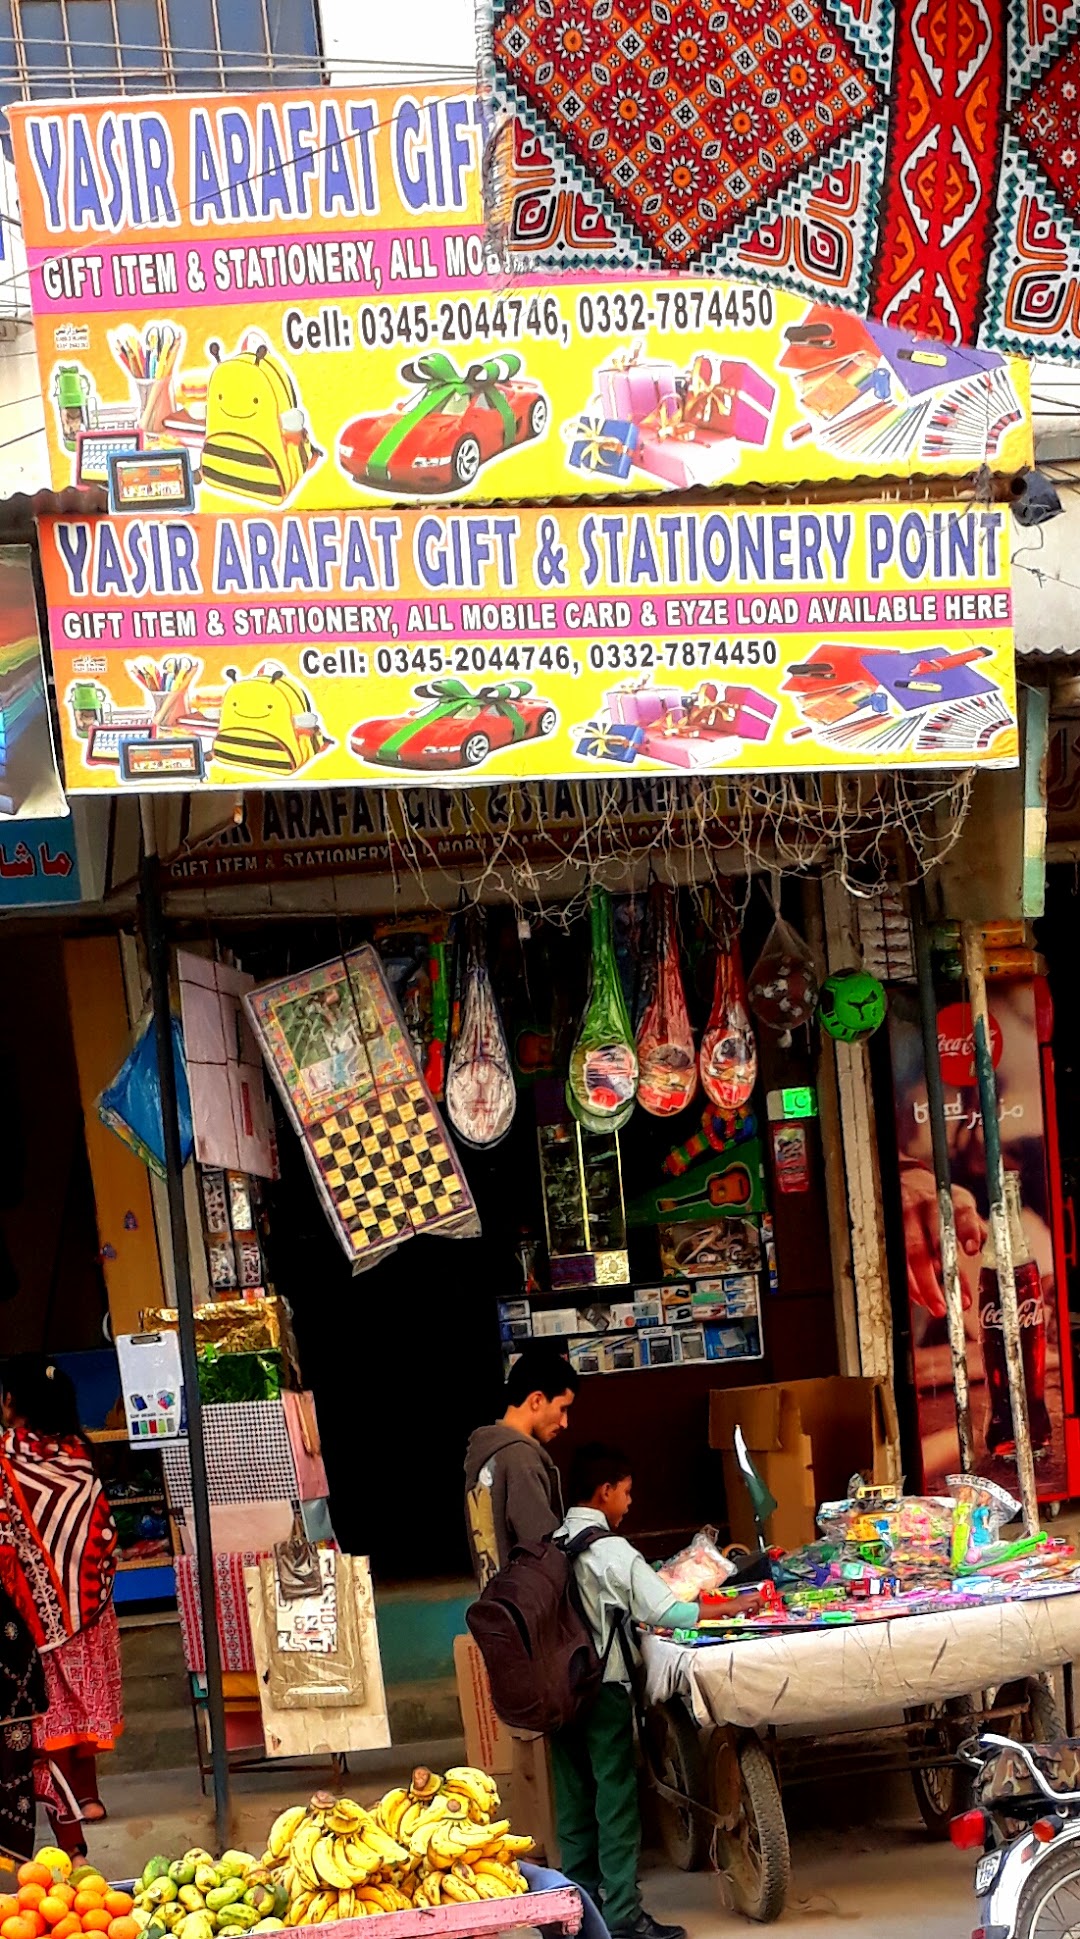 Yasir Arafat Gift & Stationery Point